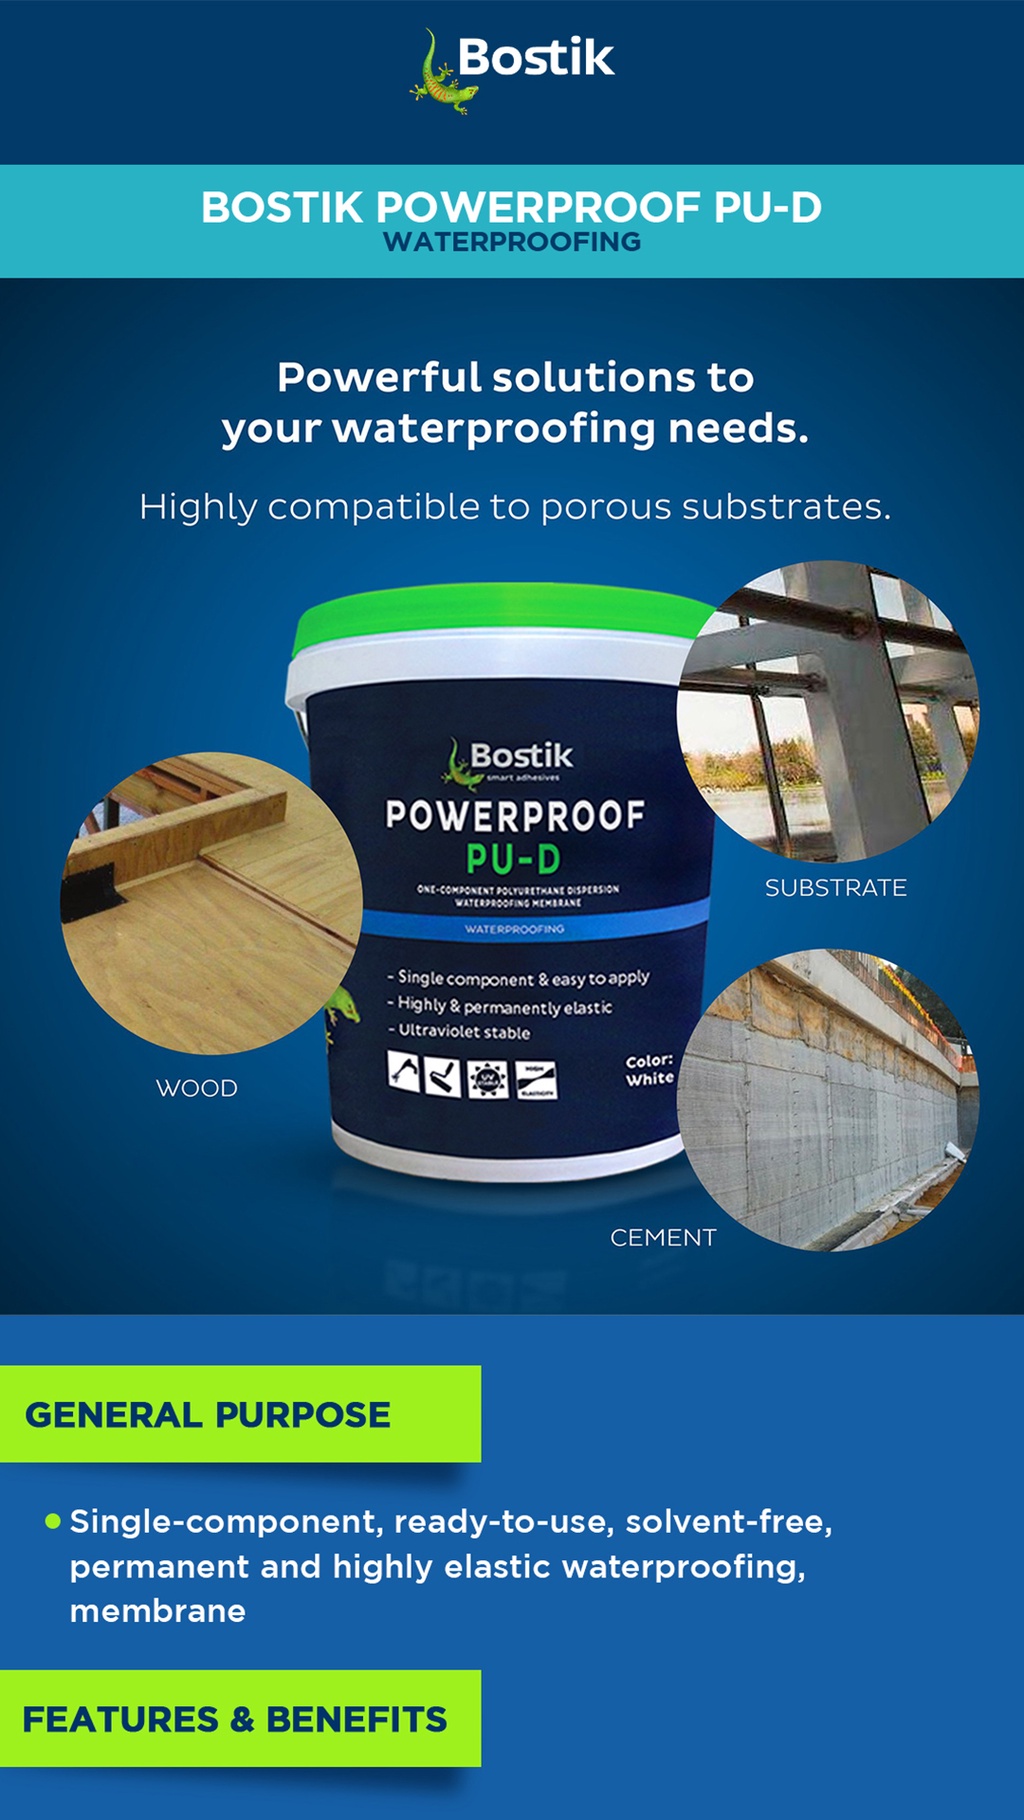 Bostik Powerproof PU-D Waterproofing Mix 16 Liters (Gray) | Shopee ...